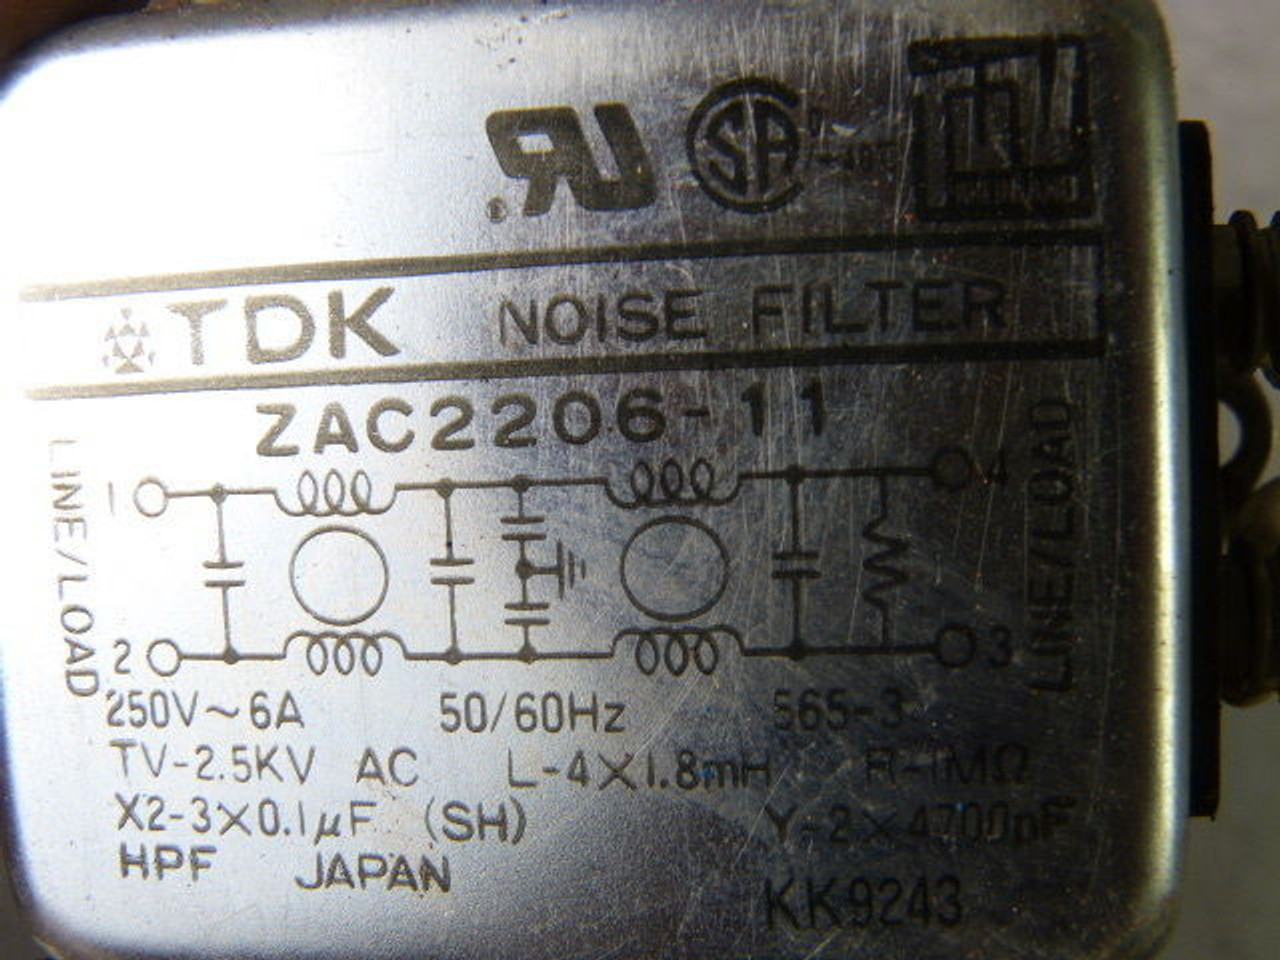 TDK ZAC2206-11 Noise Filter 6A 250V 50/60Hz USED